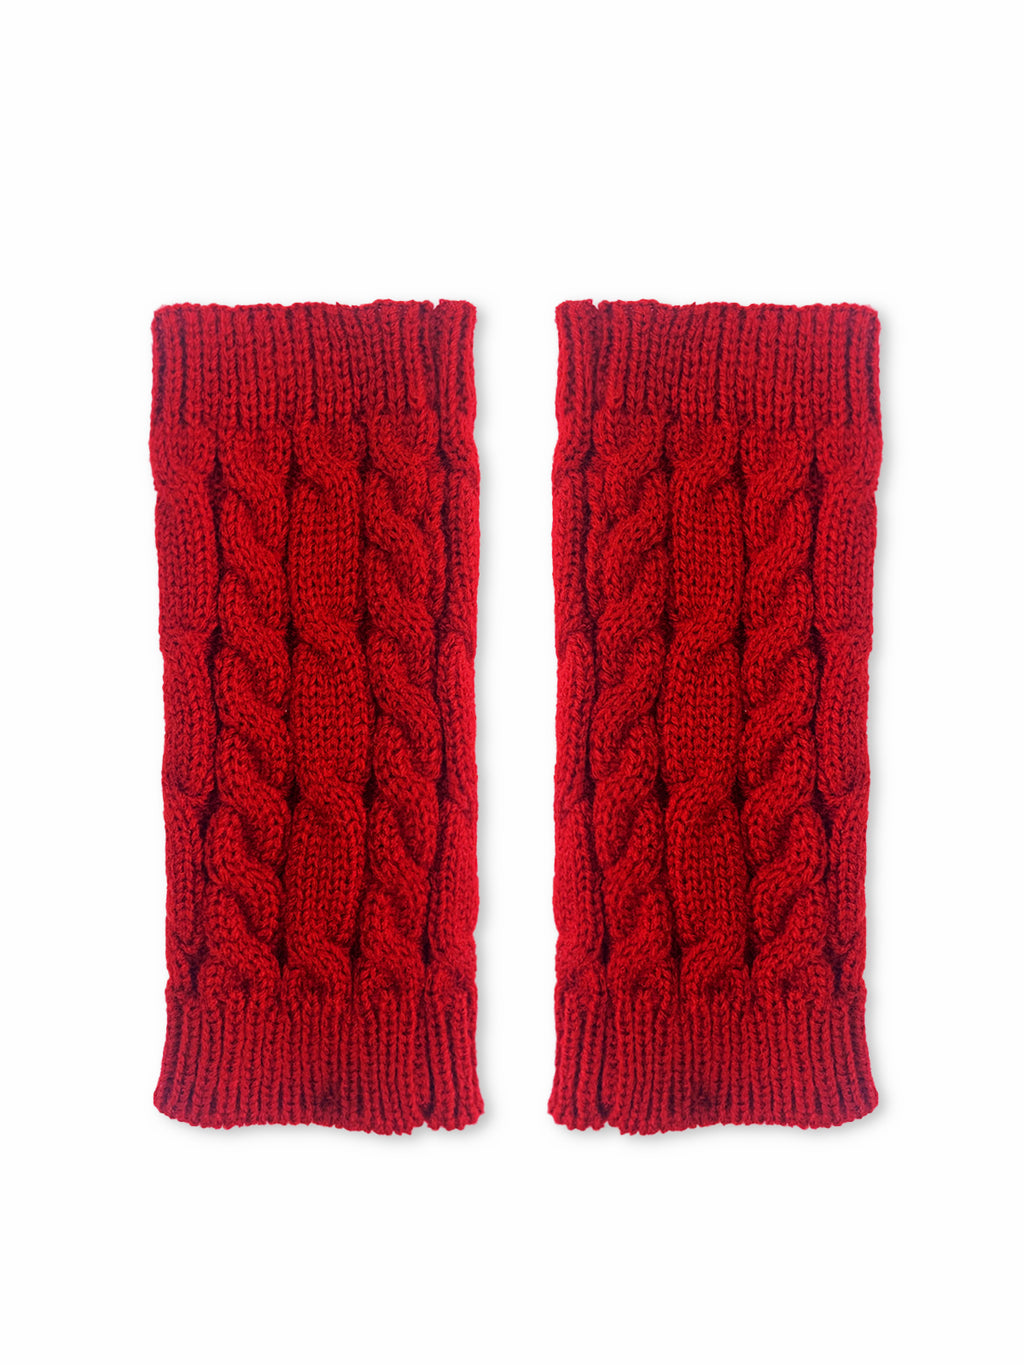 KBJ Red Gloves – Maggie Stern Stitches